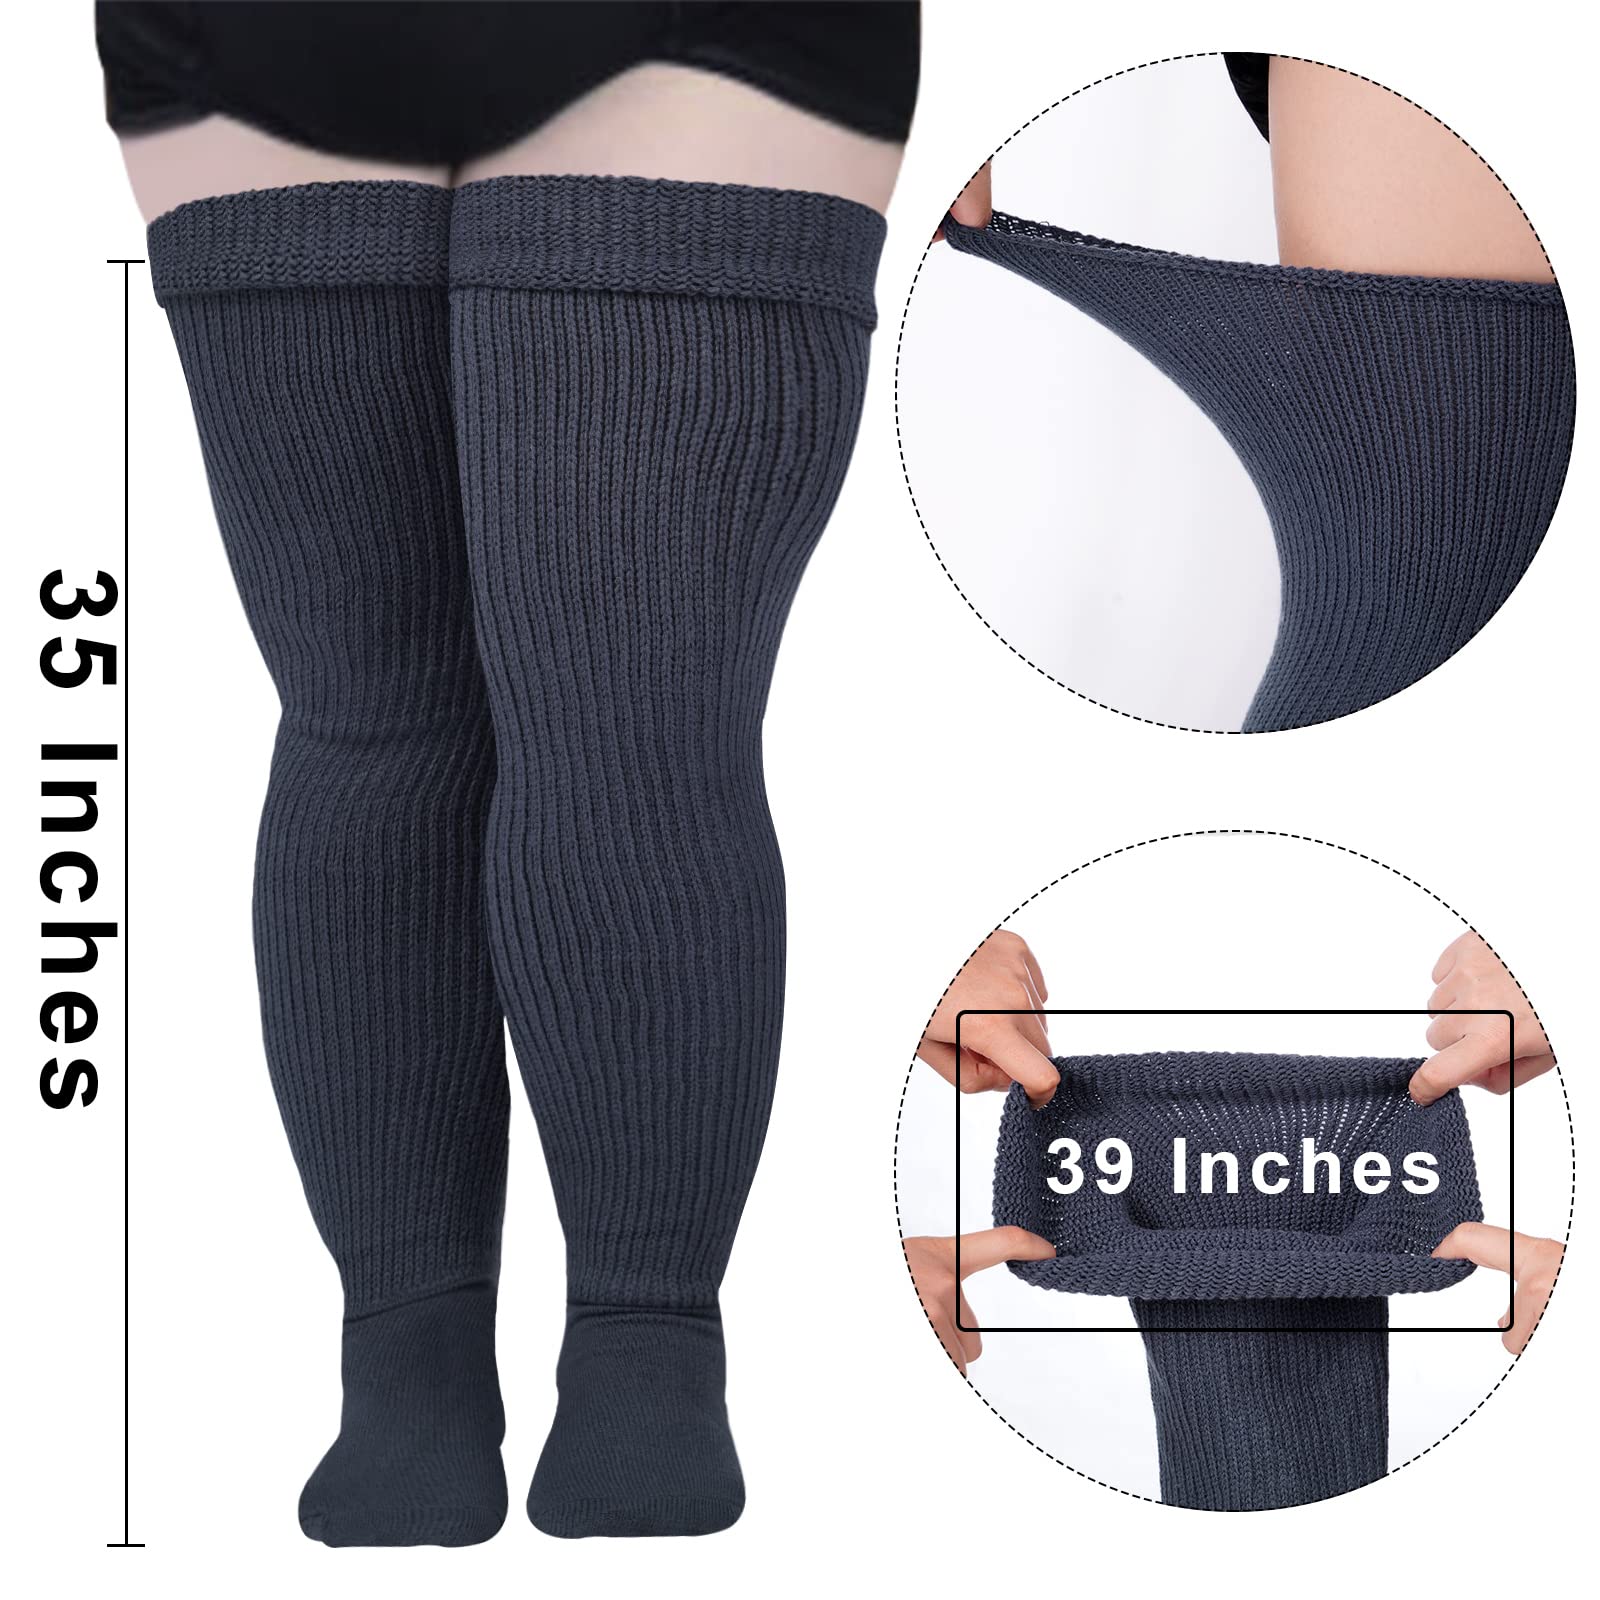 Womens Plus Size Thigh High Socks-Dark Grey - Moon Wood